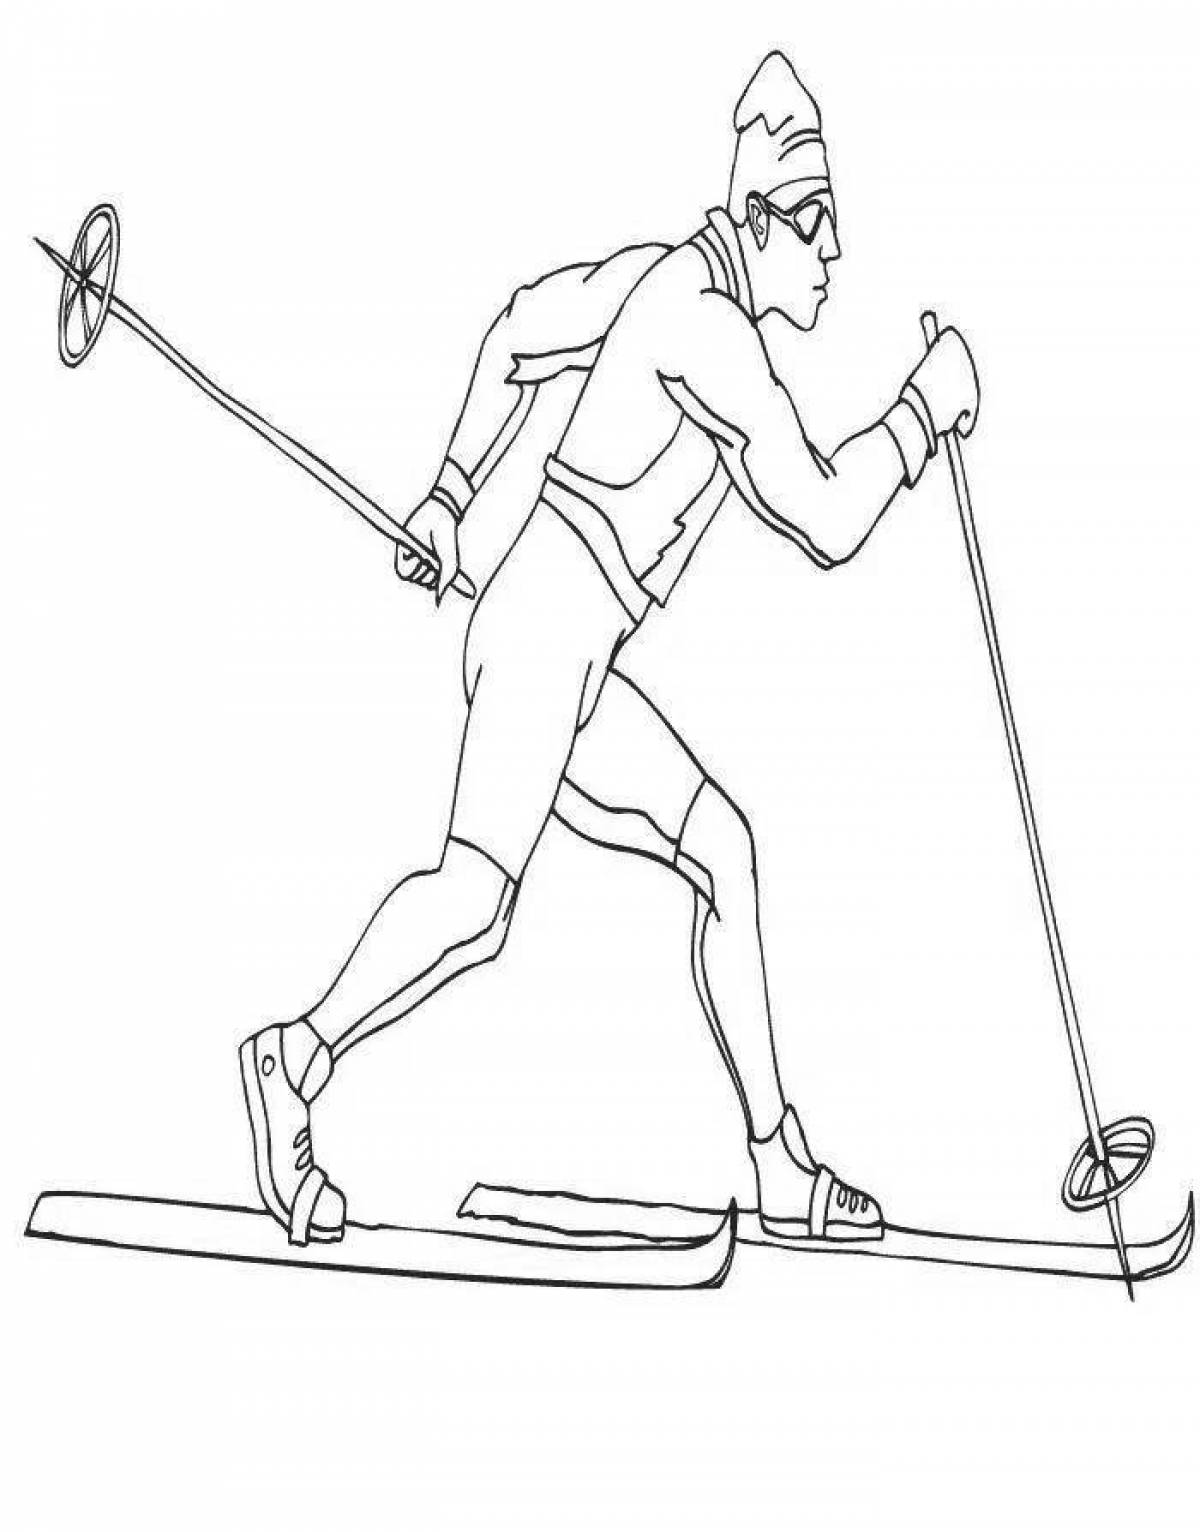 Анимированная страница раскраски катания на лыжах